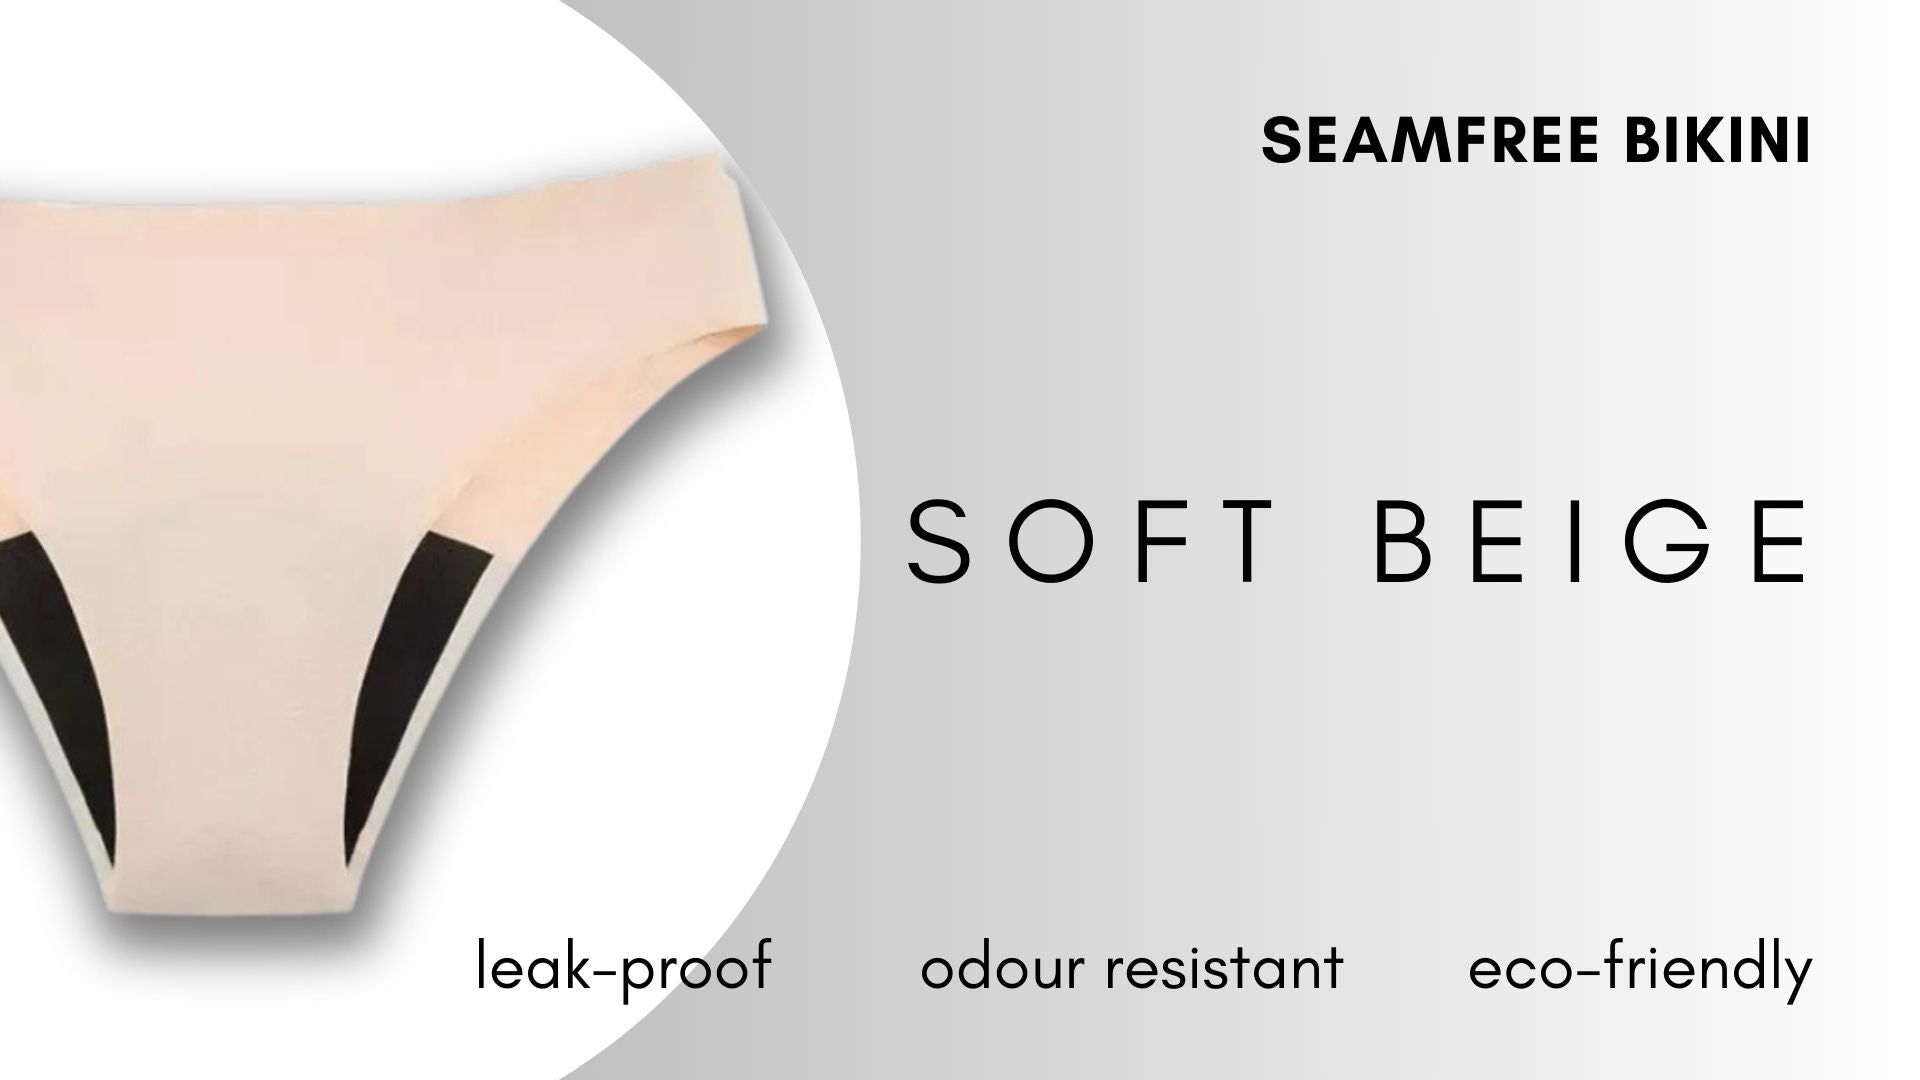 Seamfree Bikini - Soft Beige Period Underwear NZ